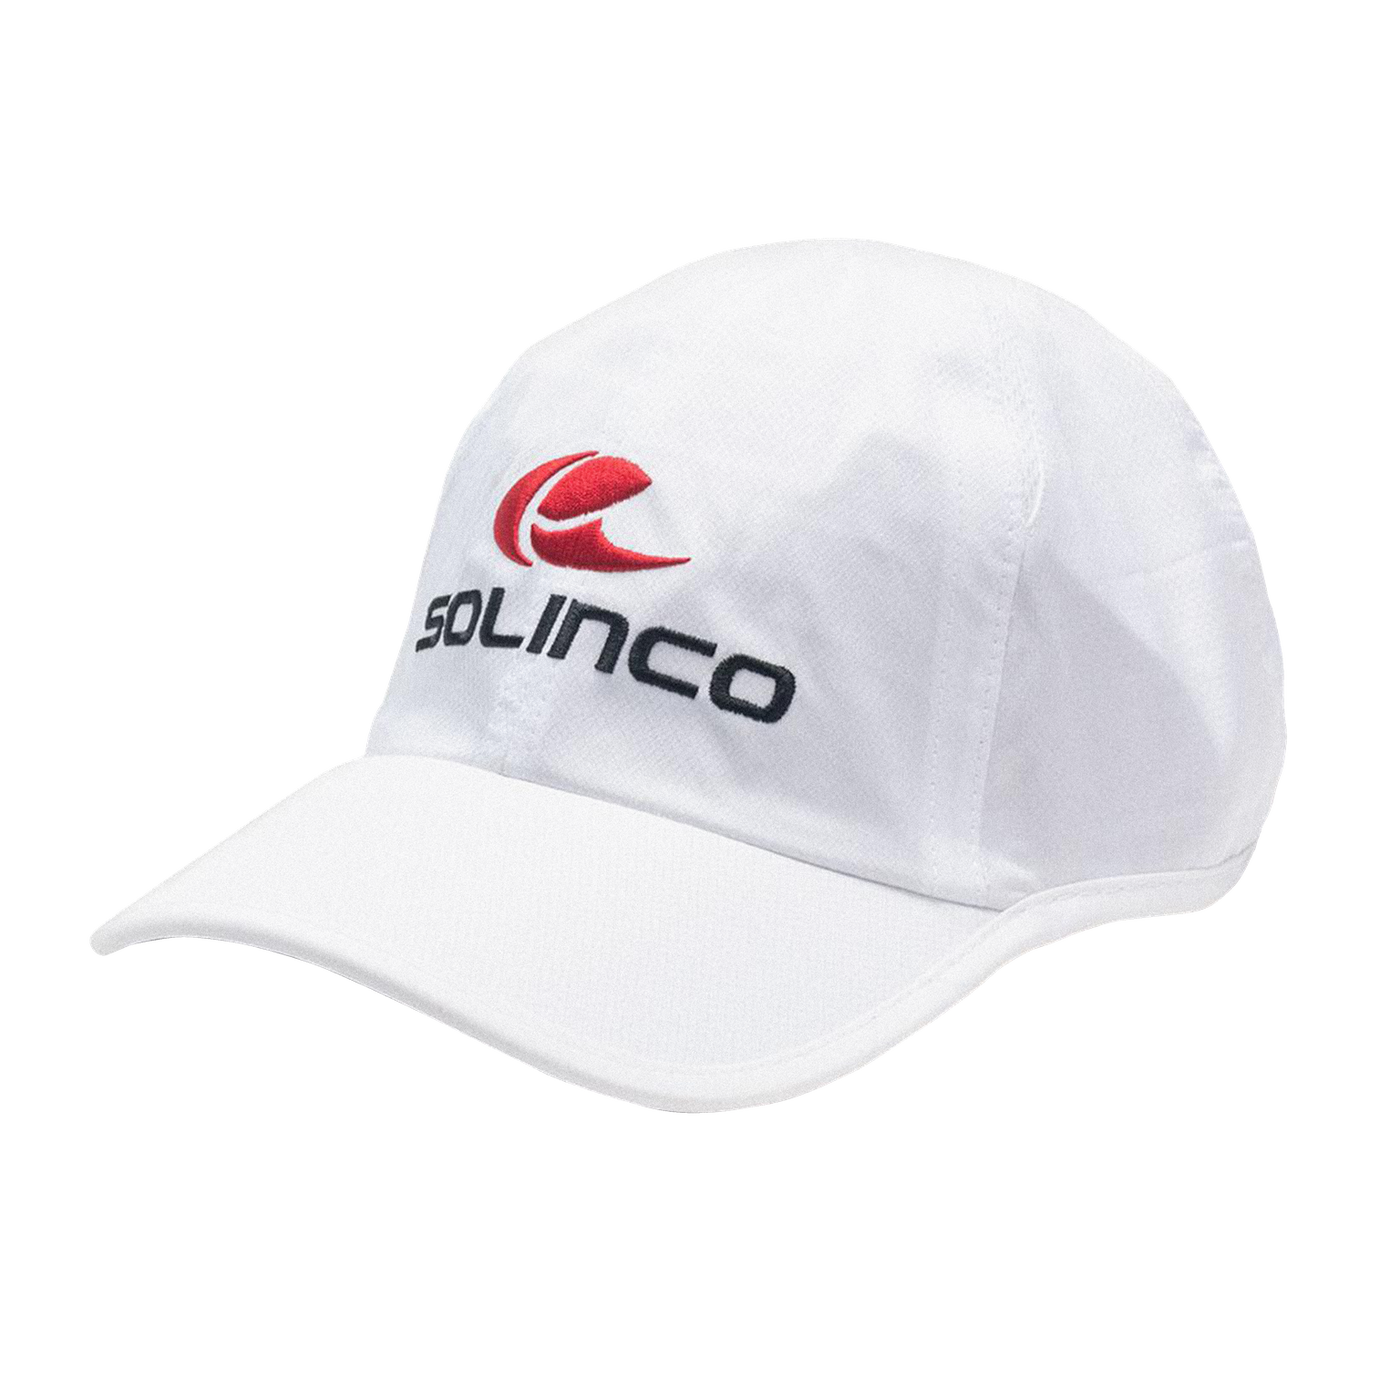 Solinco Light Performance Kasket